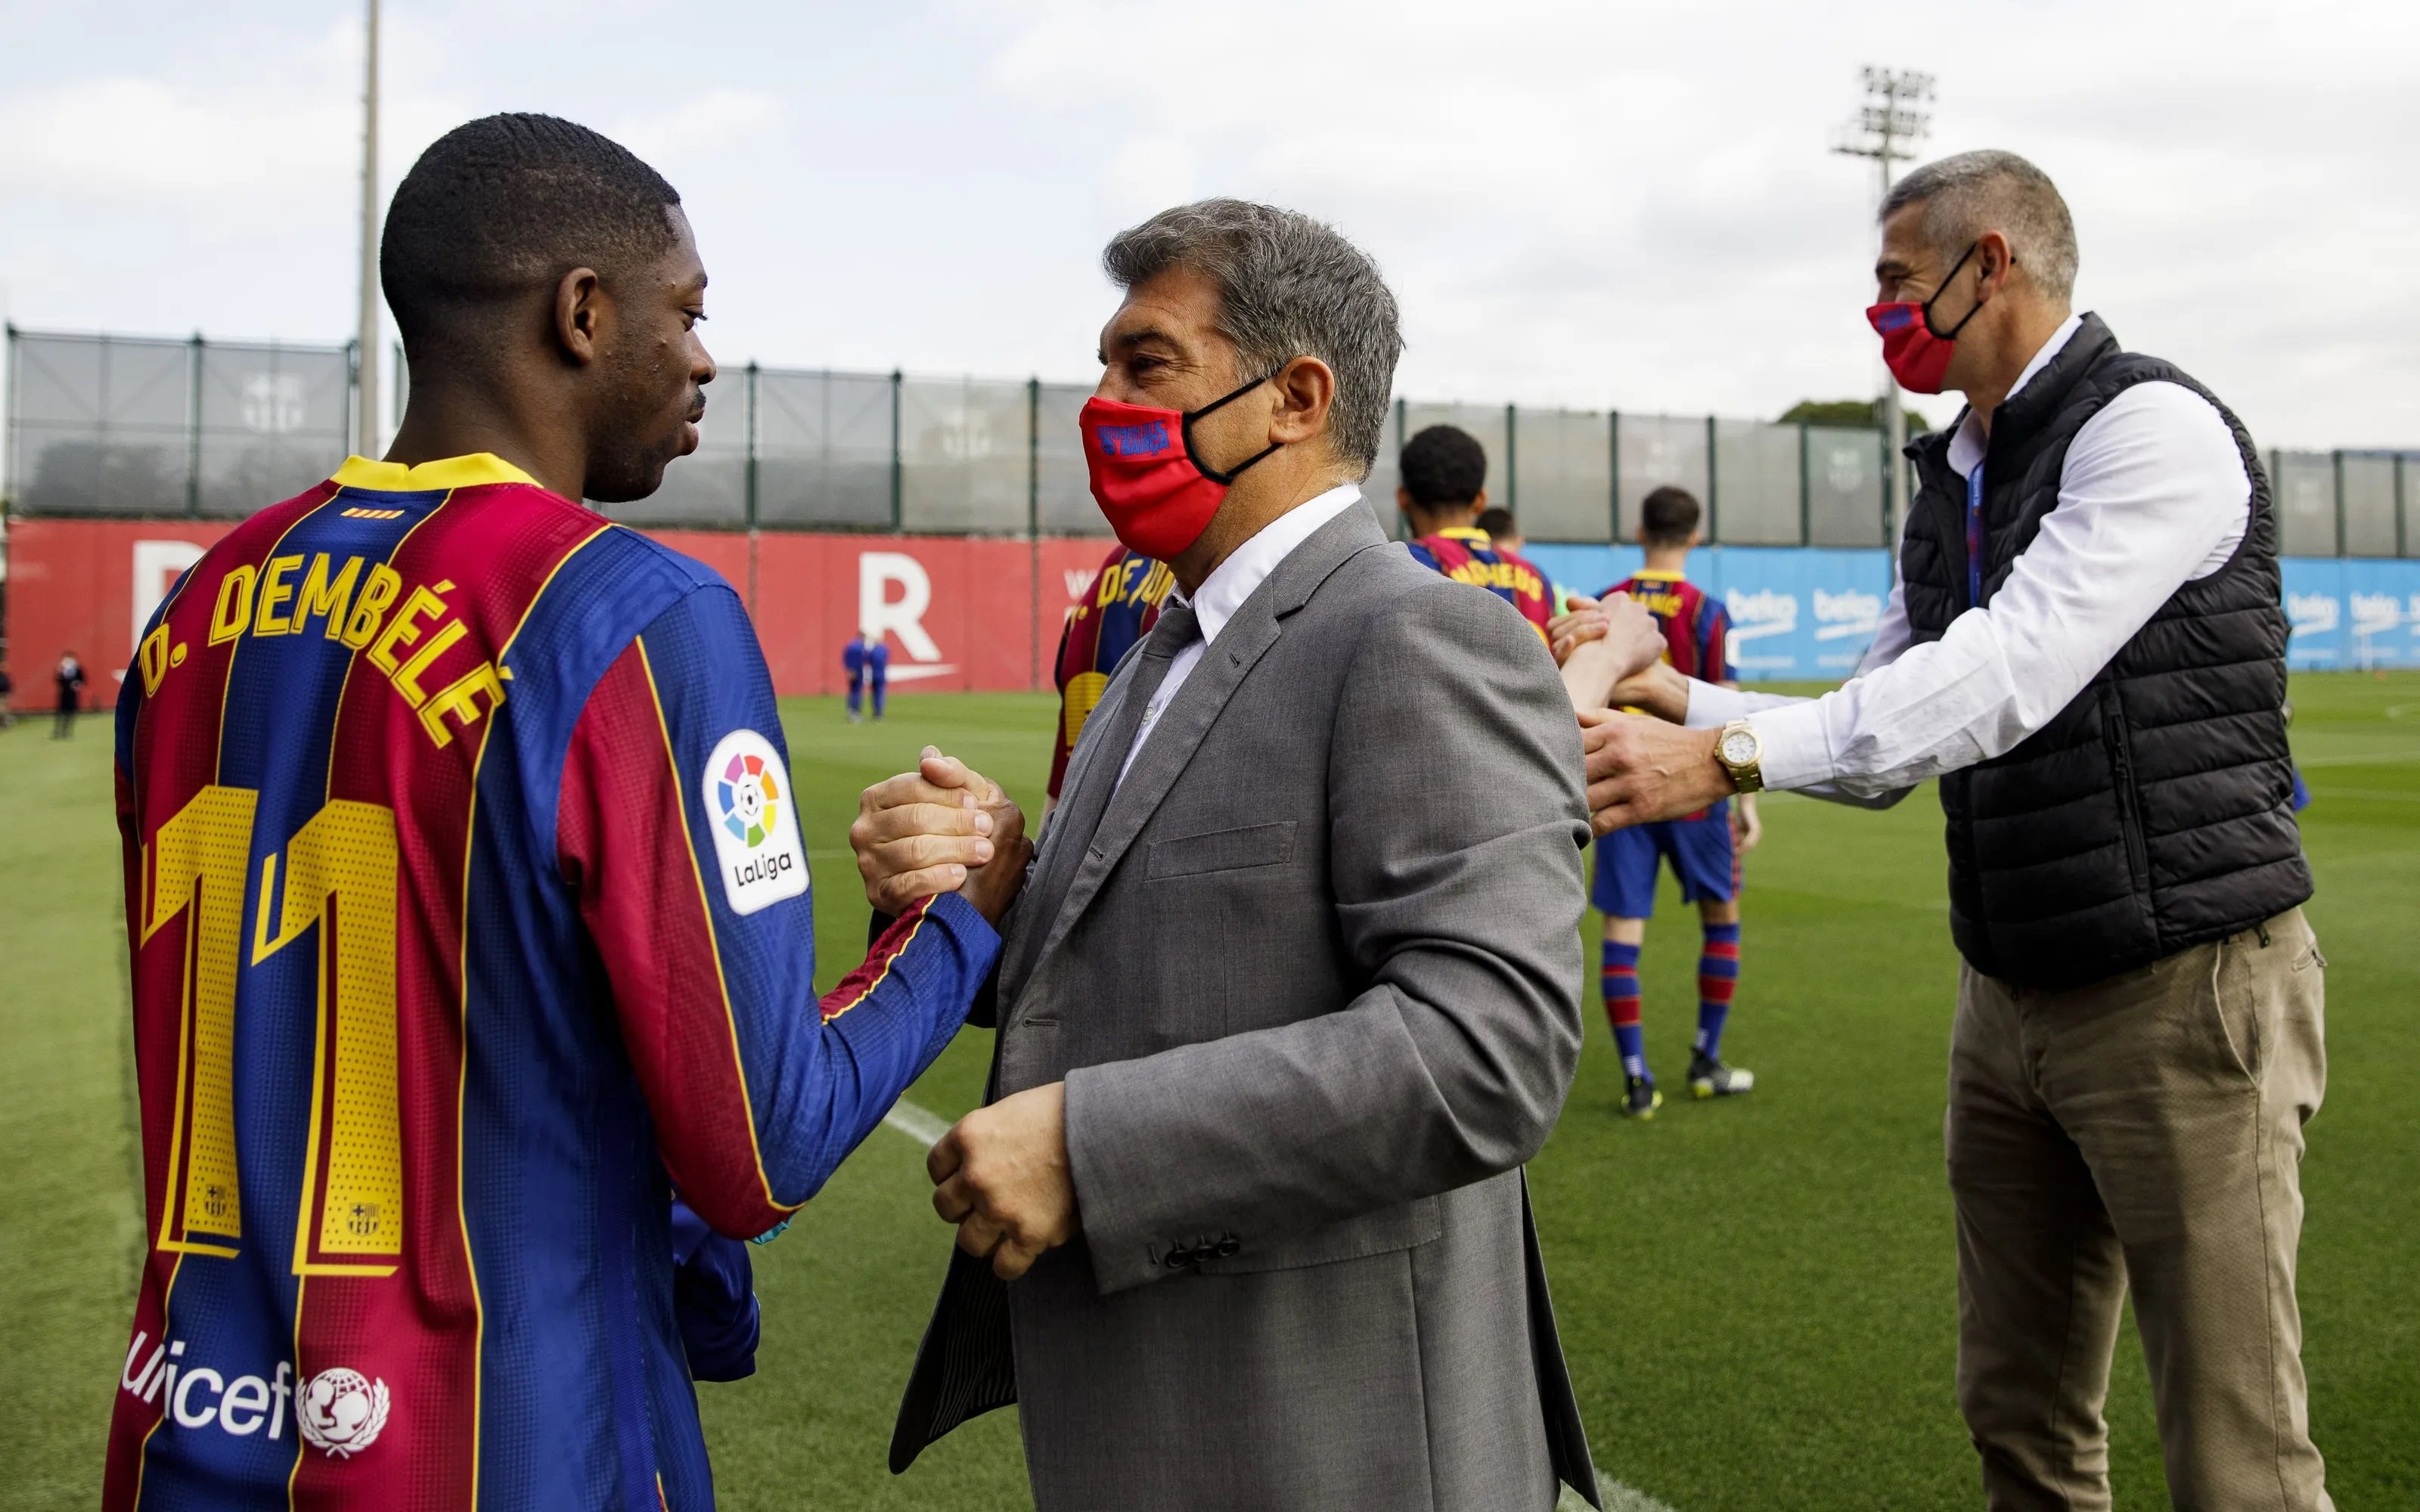 Tancat, as a la màniga de Joan Laporta agafa fora de joc Dembélé, nou trident al Barça